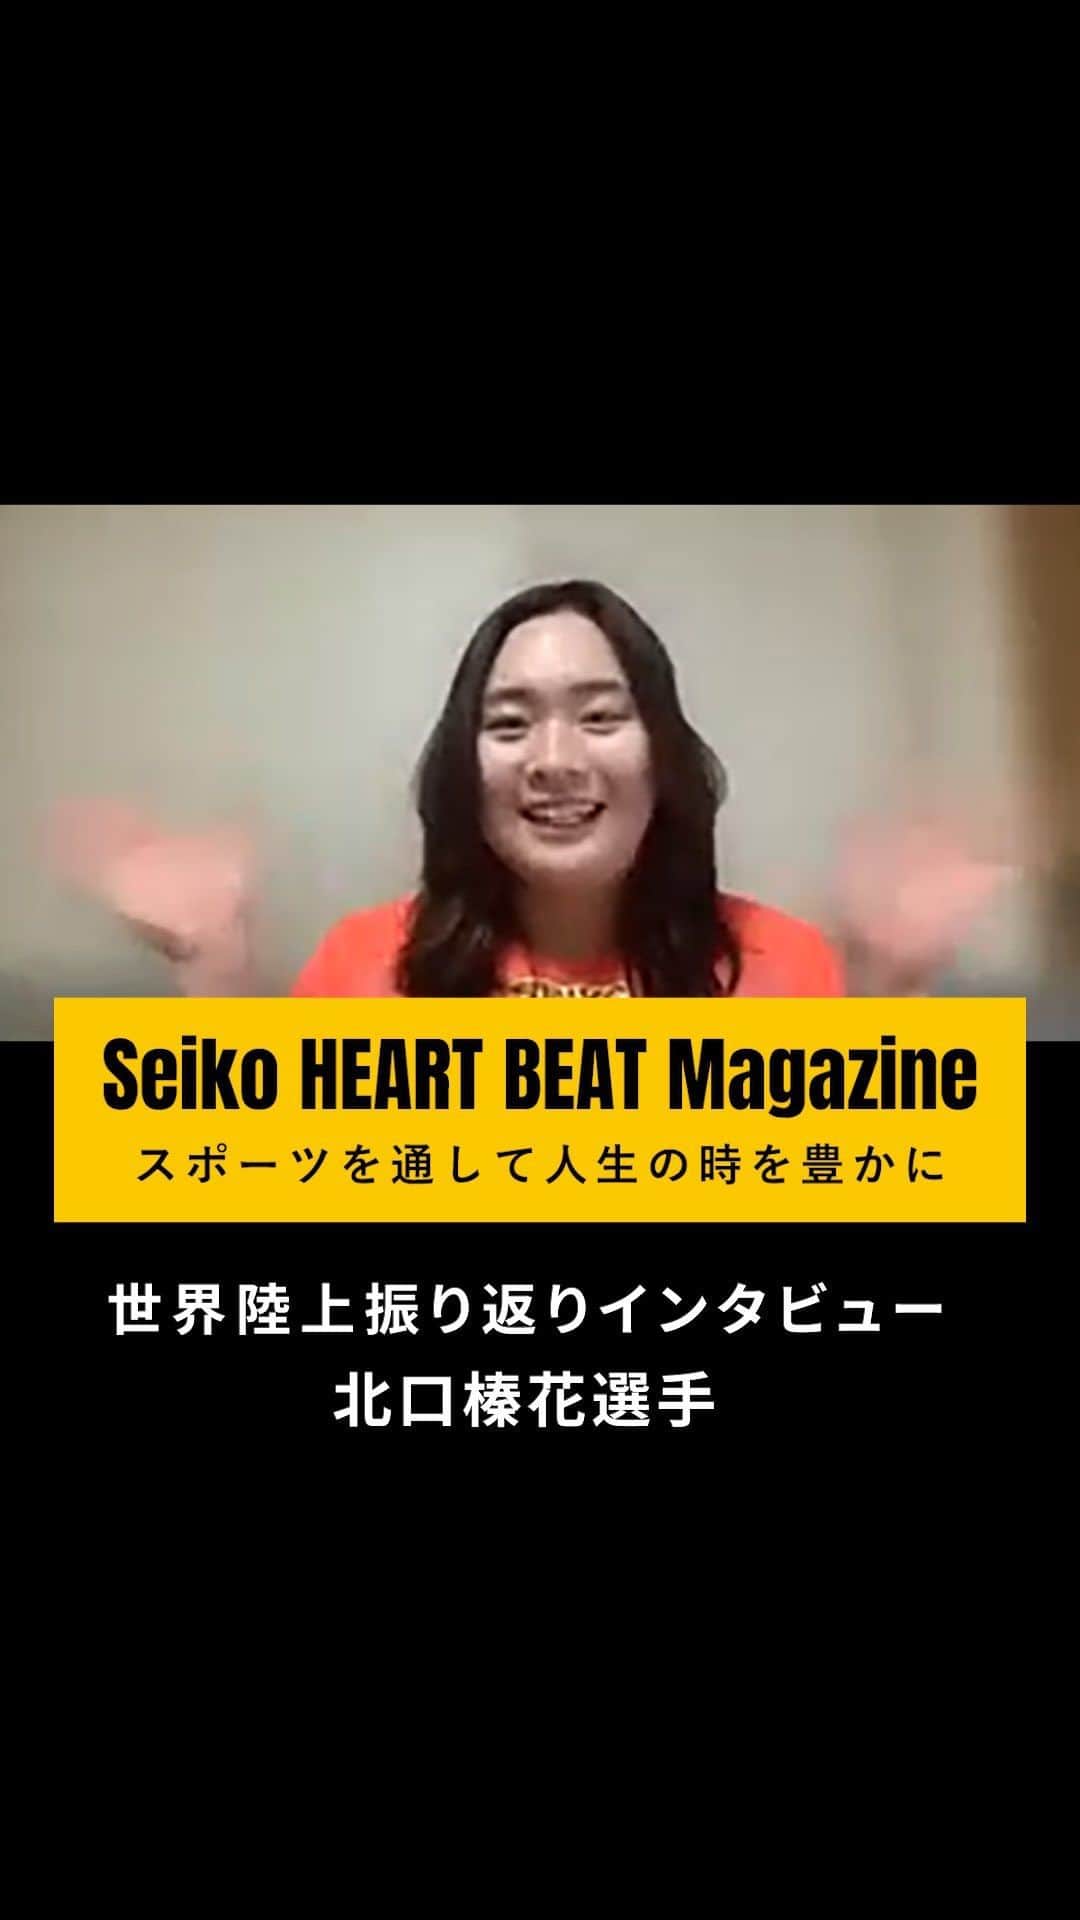 セイコースポーツのインスタグラム：「【Coming Soon…✨】  ― by Seiko HEART BEAT Magazine  "北口榛花選手インタビュー!!"  世界陸上を経て、他では語られていないエピソードを公開！  金メダリスト 北口選手が見る「世界陸上」とは？  今後の展望や自身の向き合い方など熱く語っていただきました！  #北口榛花 #北口選手    記事は「Seiko HEART BEAT Magazine」にて11/30(木)公開です‼️  ぜひご覧ください✨  —  セイコースポーツのInstagram📷では、  ・スポーツが面白くなる知識📚  ・アスリートの情報🏃　　　　　  など「ココ」でしか語られないスポーツ情報を発信中✨  他の投稿はこちらから👀→ #Seiko_HBM  —  #北口榛花 #北口選手 #世界陸上 #ブダペスト #金メダル #やり投げ #槍投げ #スポーツ #sport #アスリート #athlete #インタビュー #対談 #セイコー #Seiko」